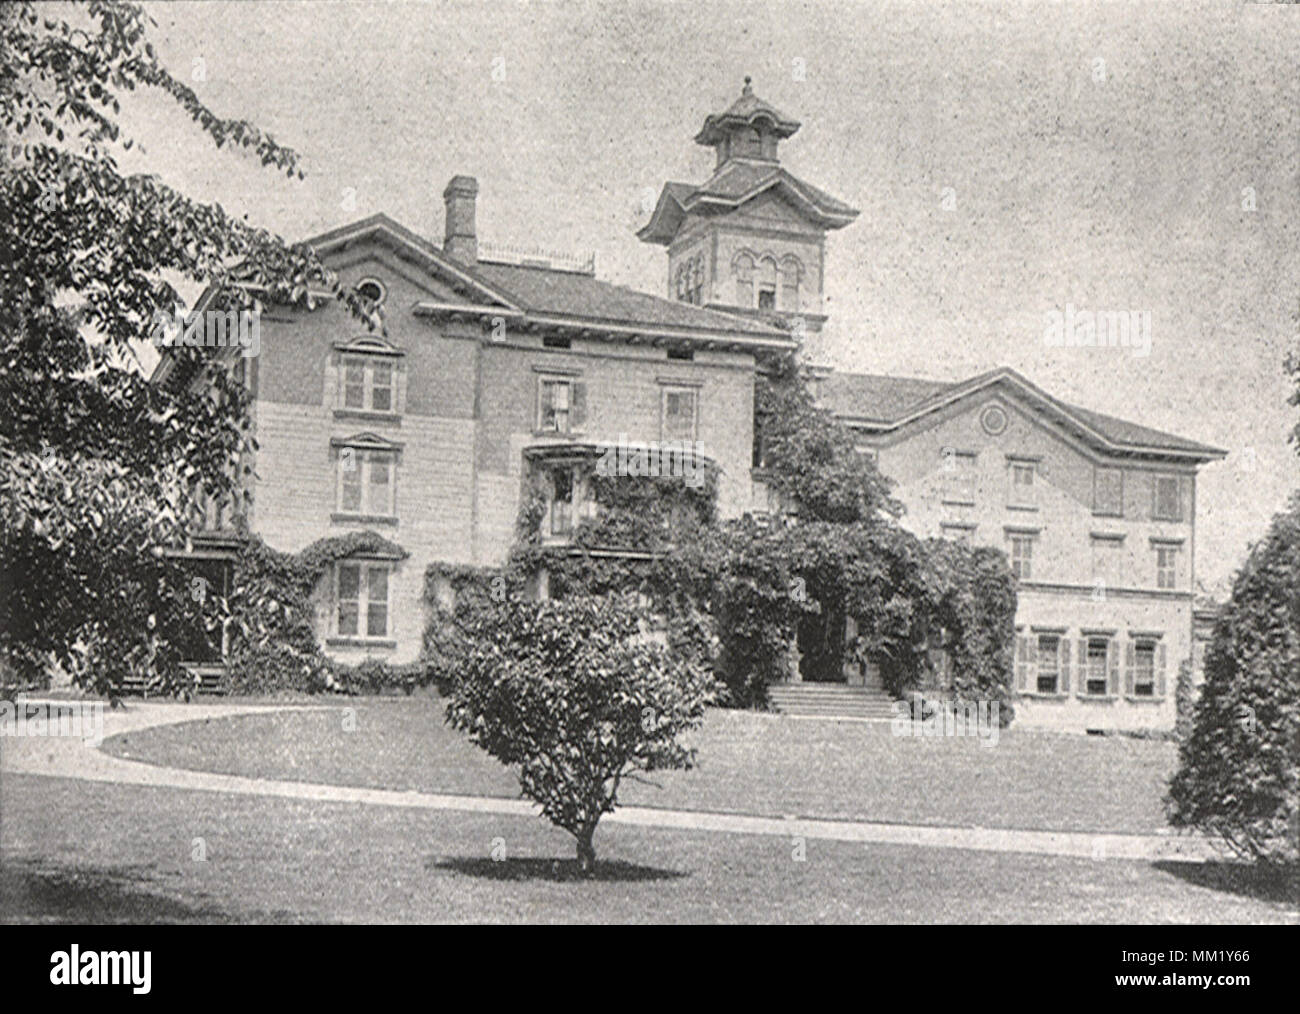 Saint Margaret's School For Girls. Waterbury. 1895 Stock Photo